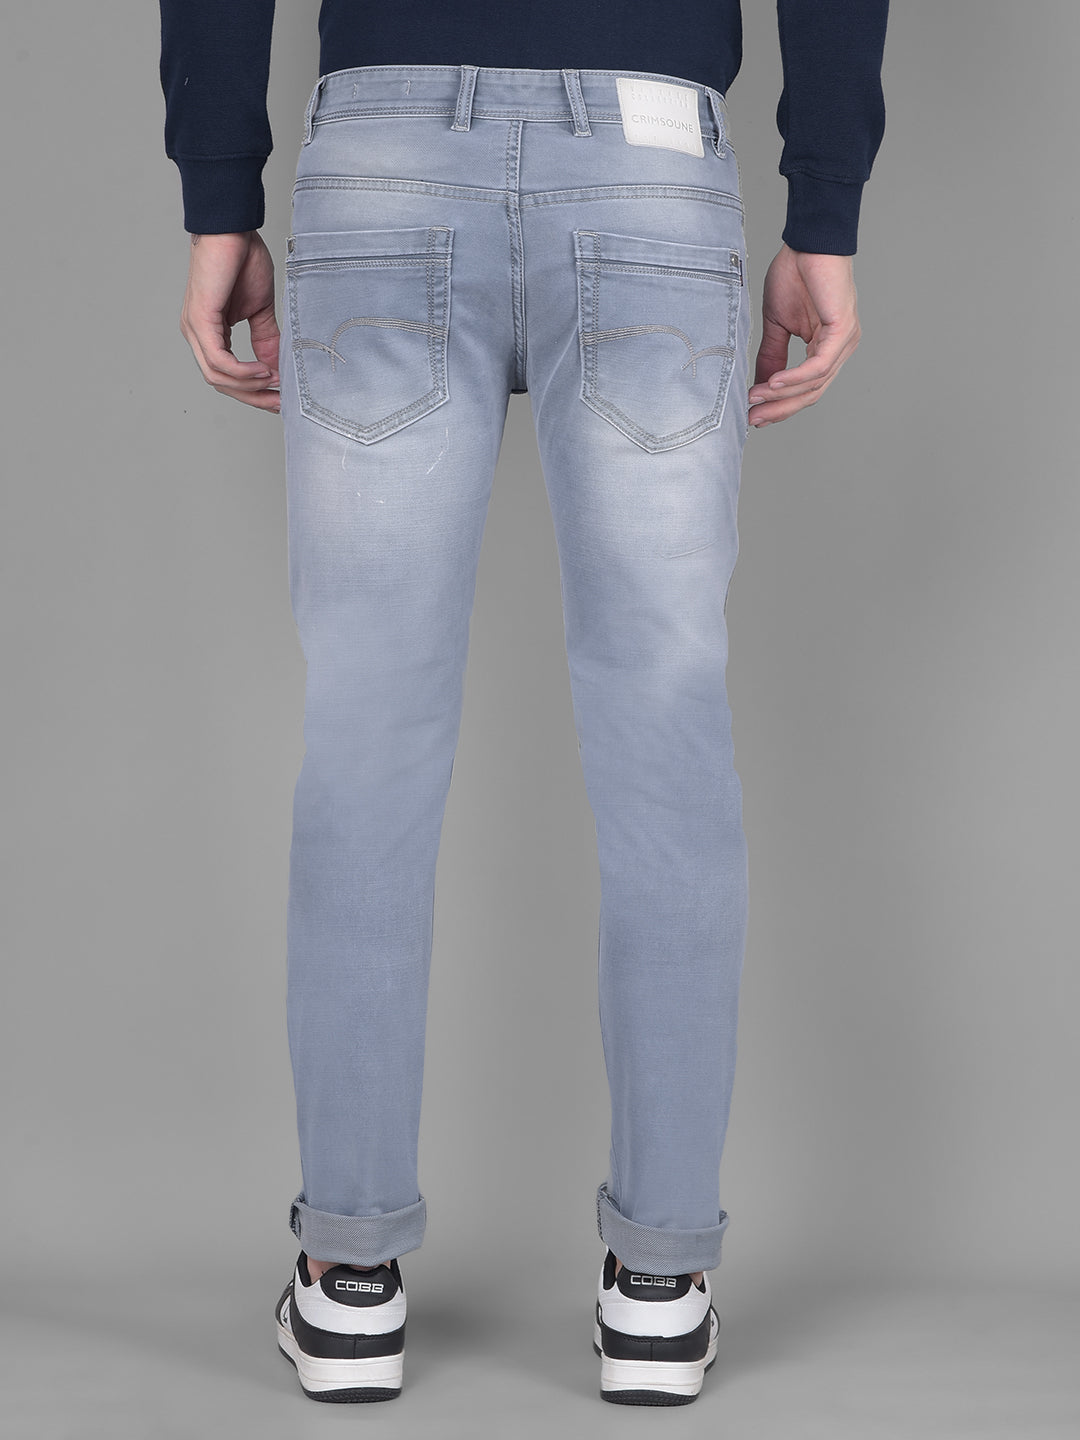 Light Blue Jeans-Men Jeans-Crimsoune Club